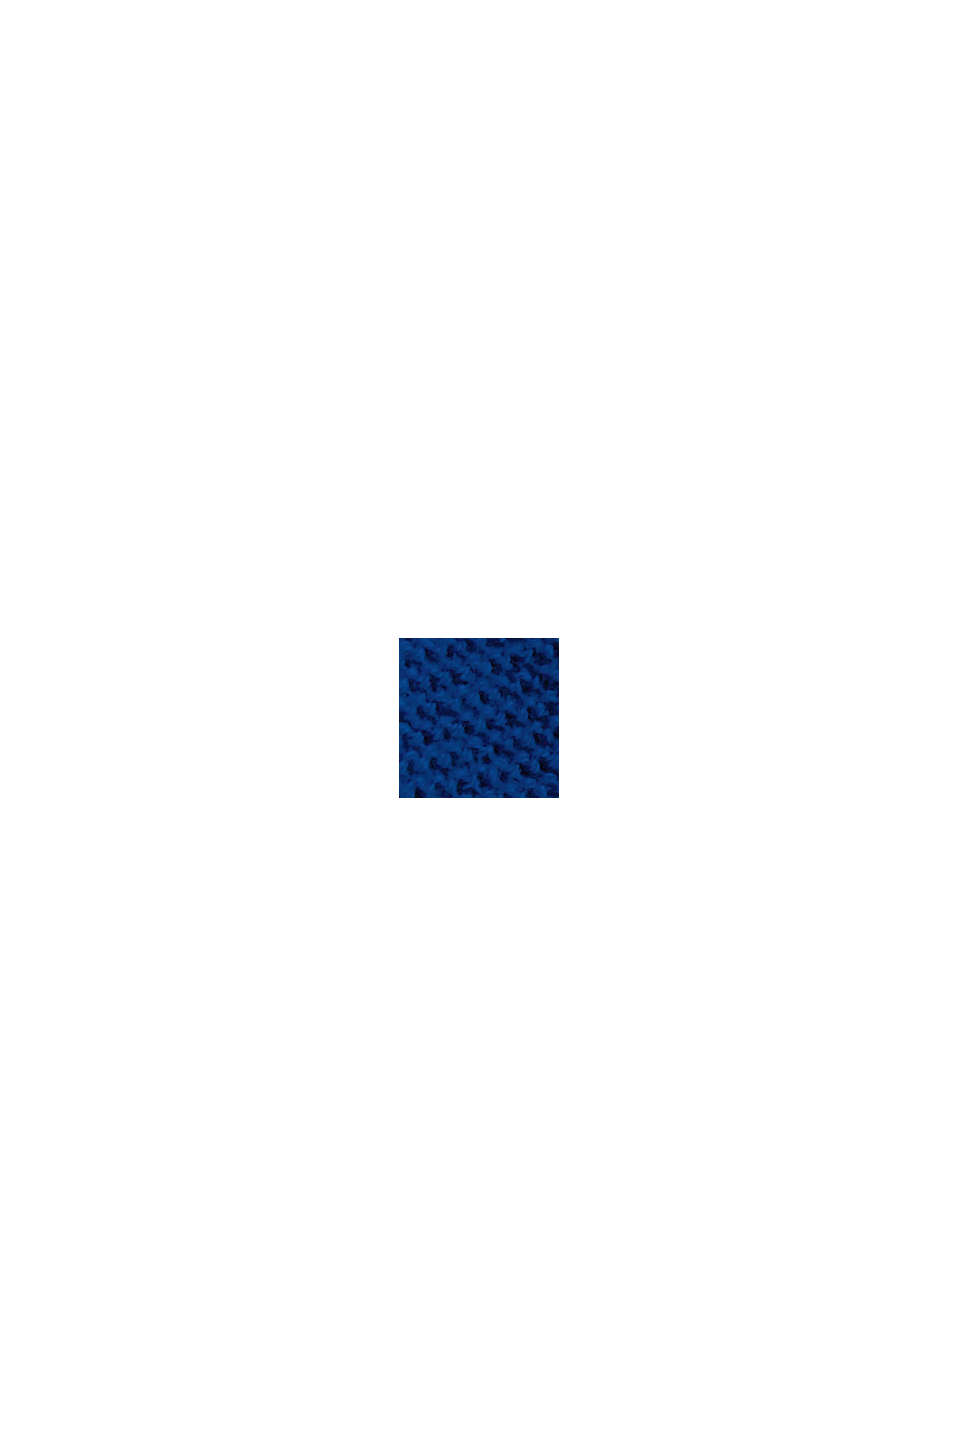 Jersey de punto en 100% algodón ecológico, BRIGHT BLUE, swatch